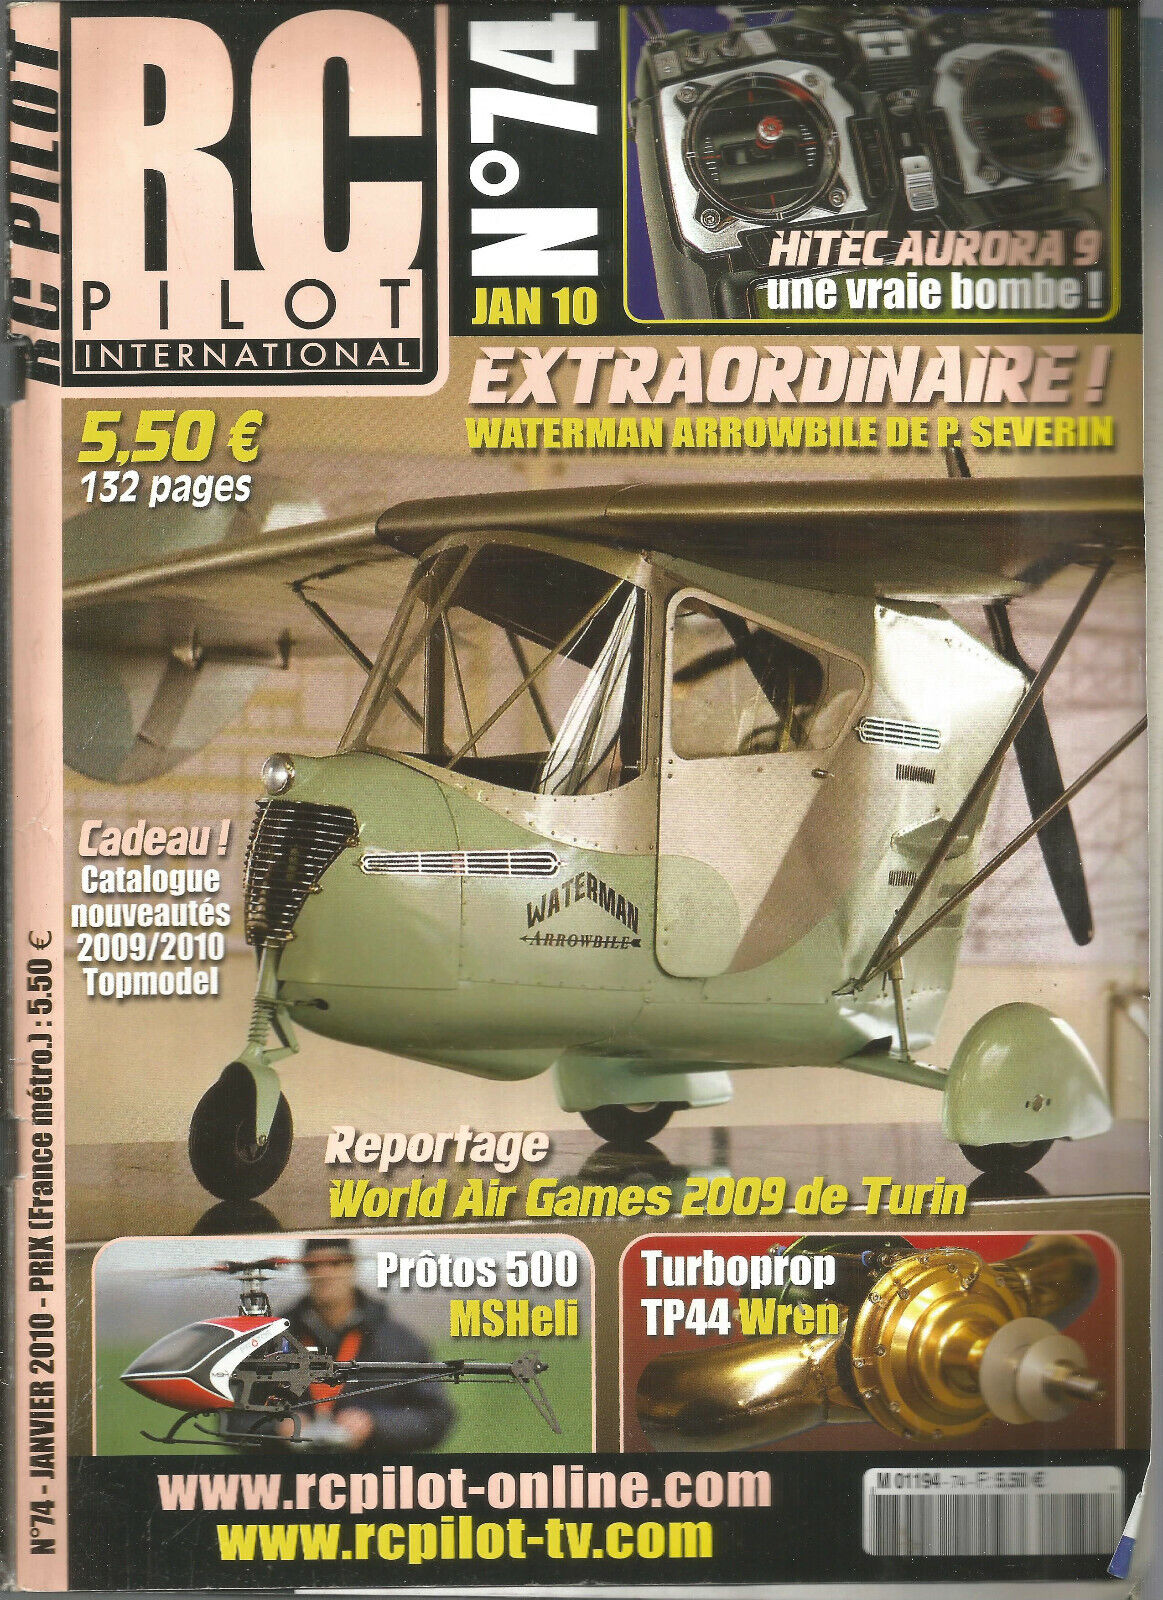 Rc pilot nº 74 plan "schoolkinner canary" 2ème part/htec aurora 9/prototypes 500